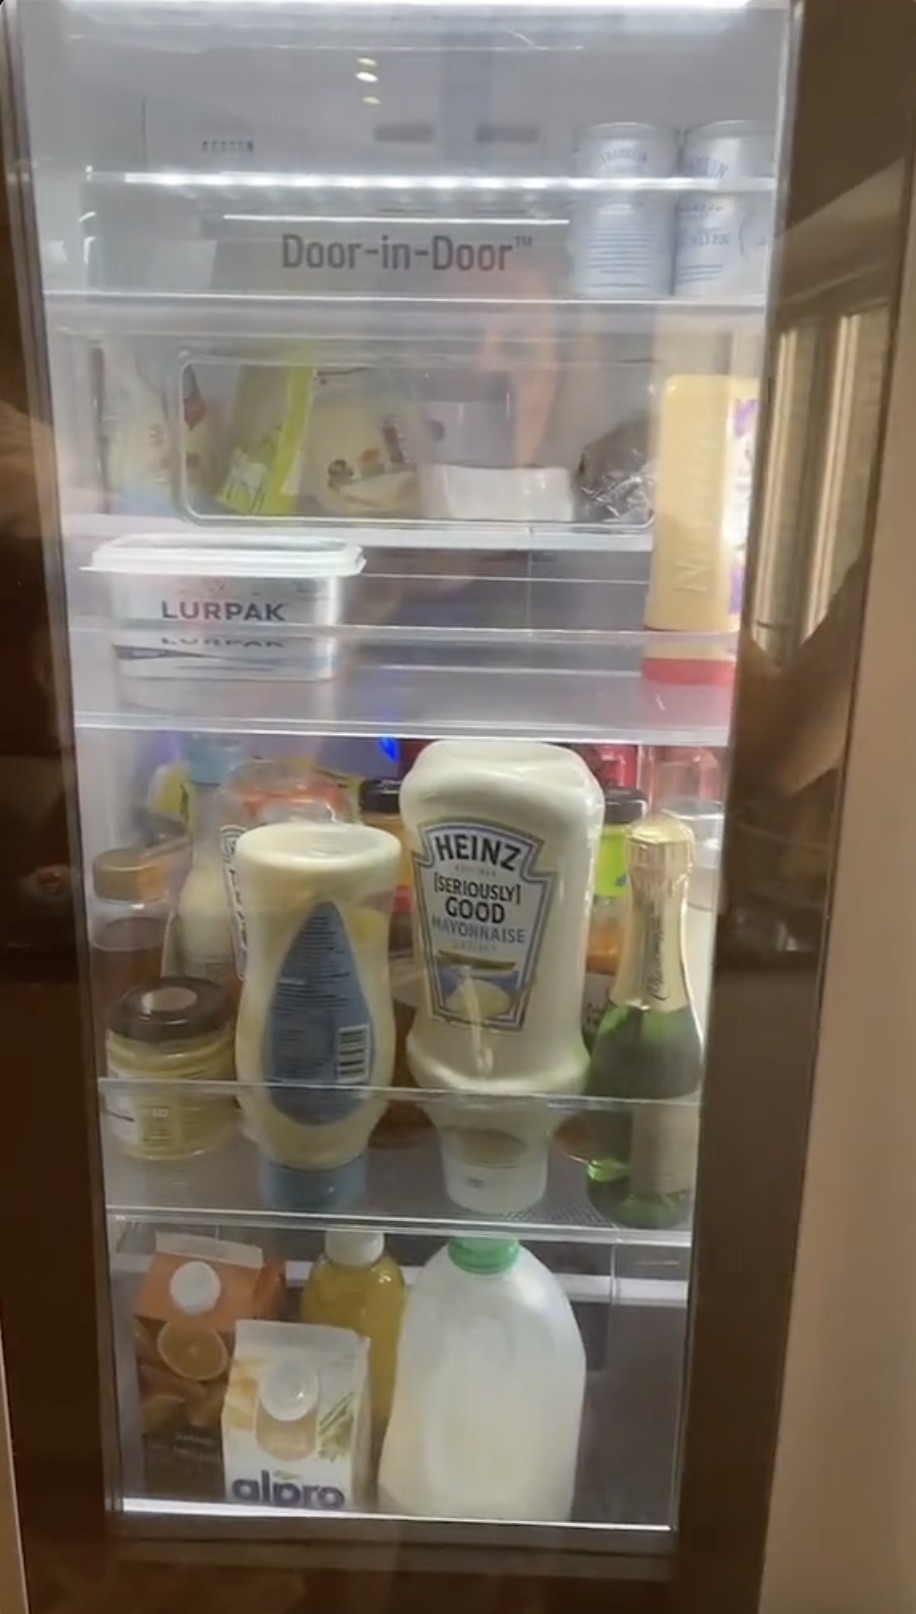 Der Kühlschrank verfügt über eine Tür in der Tür, so dass Alltagsgegenstände leicht zugänglich sind